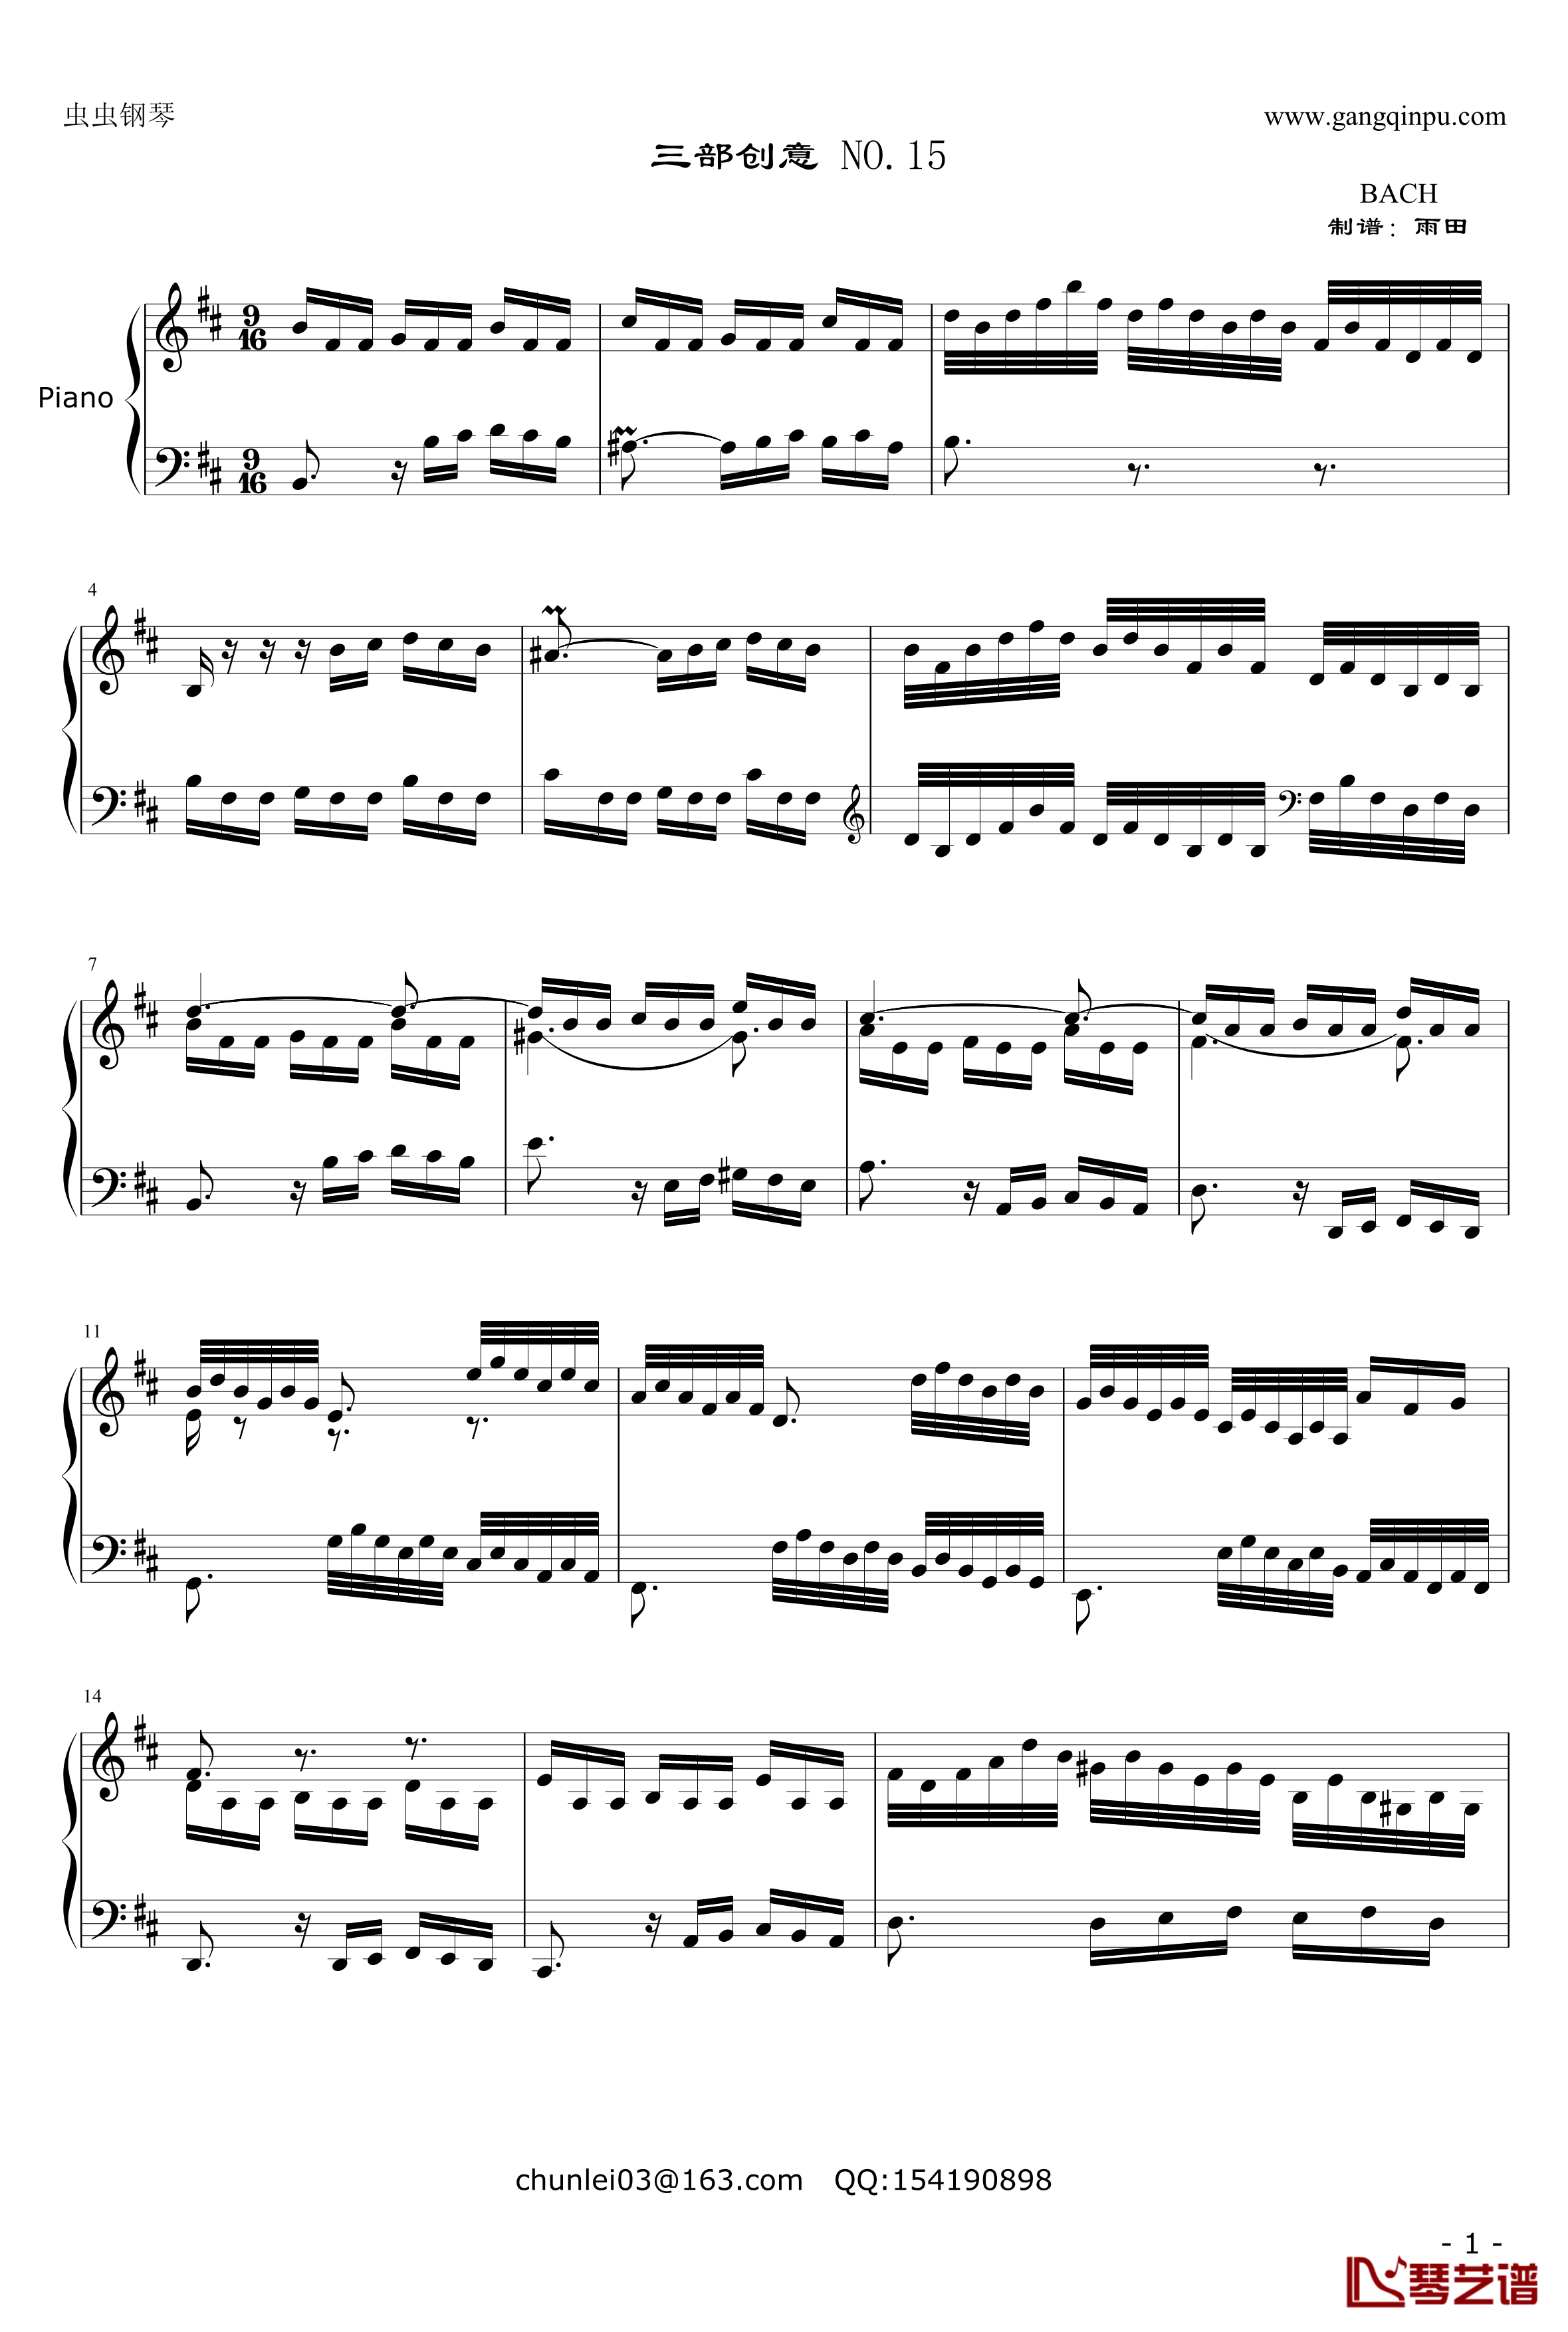 三部创意NO.15钢琴谱-奥芬巴赫-第15首1